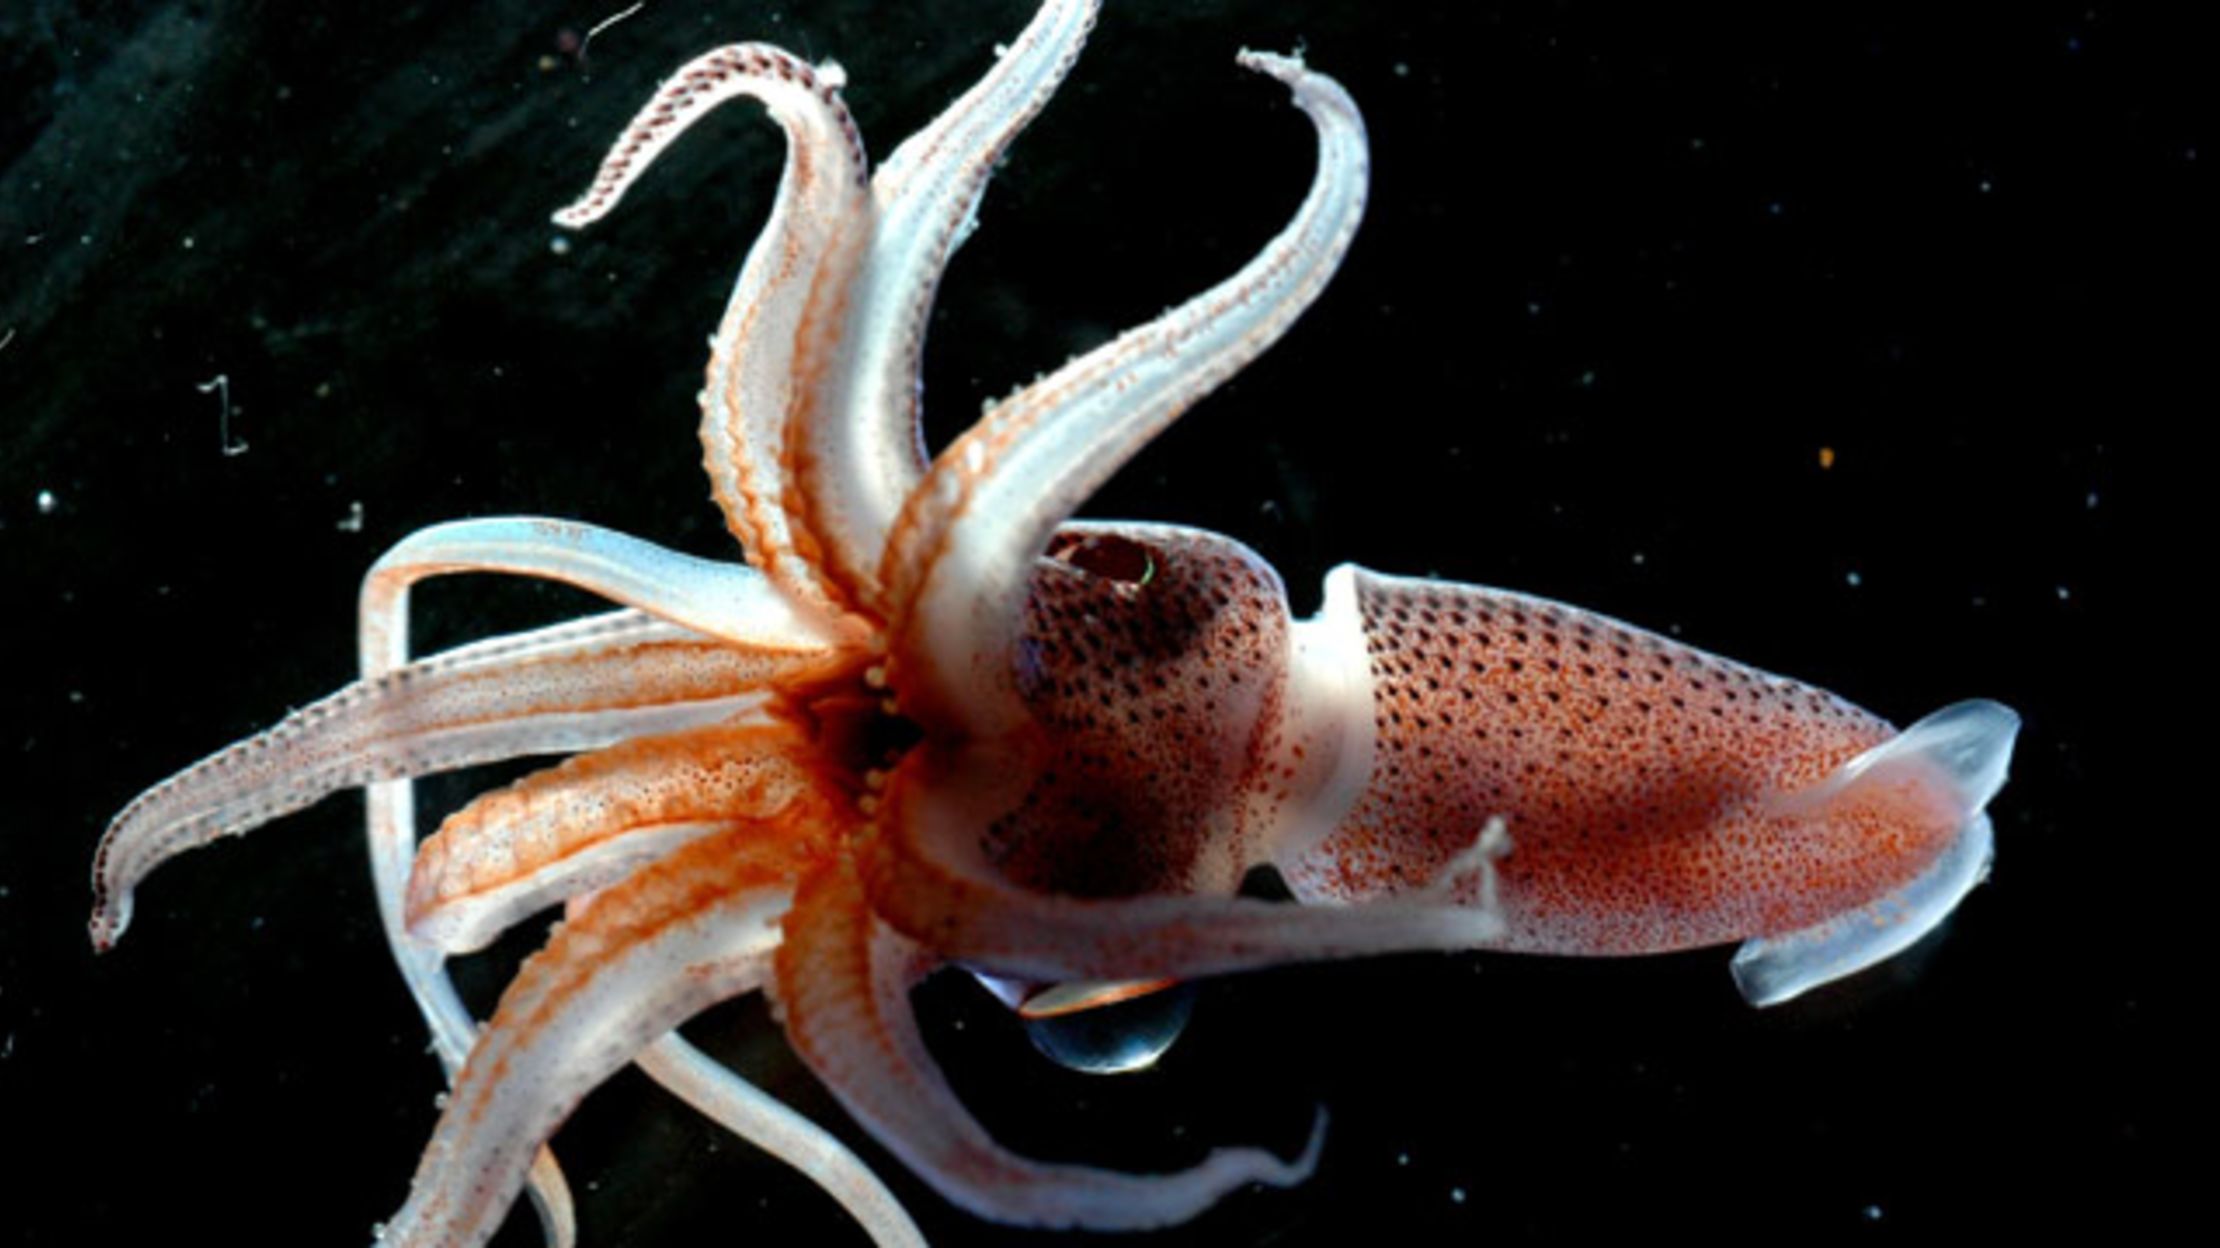 are squids invertebrates